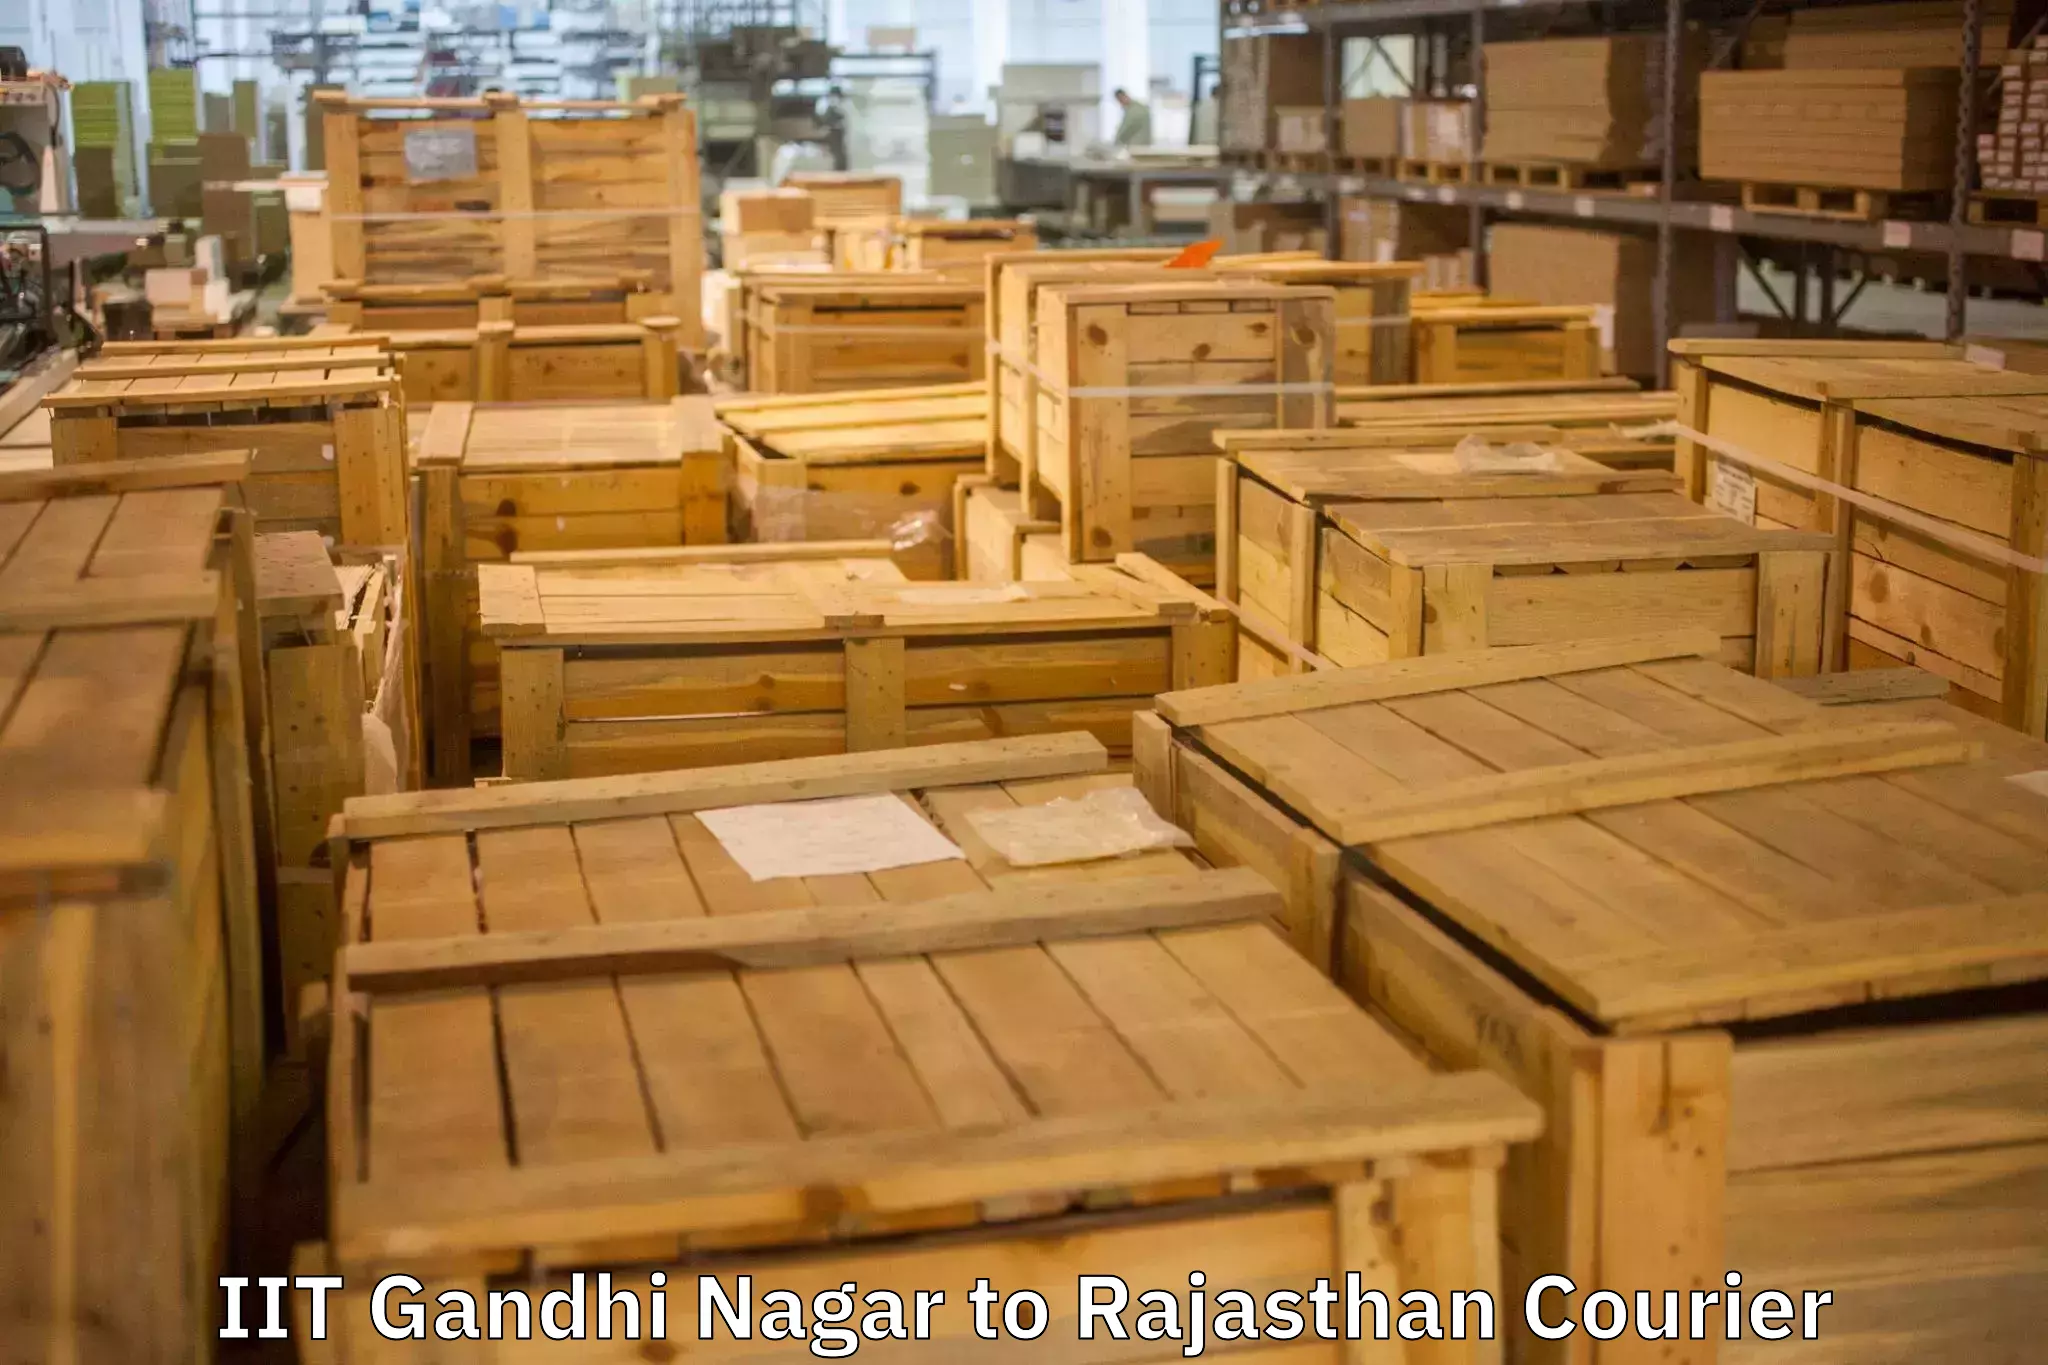 Dependable moving services IIT Gandhi Nagar to Nainwa